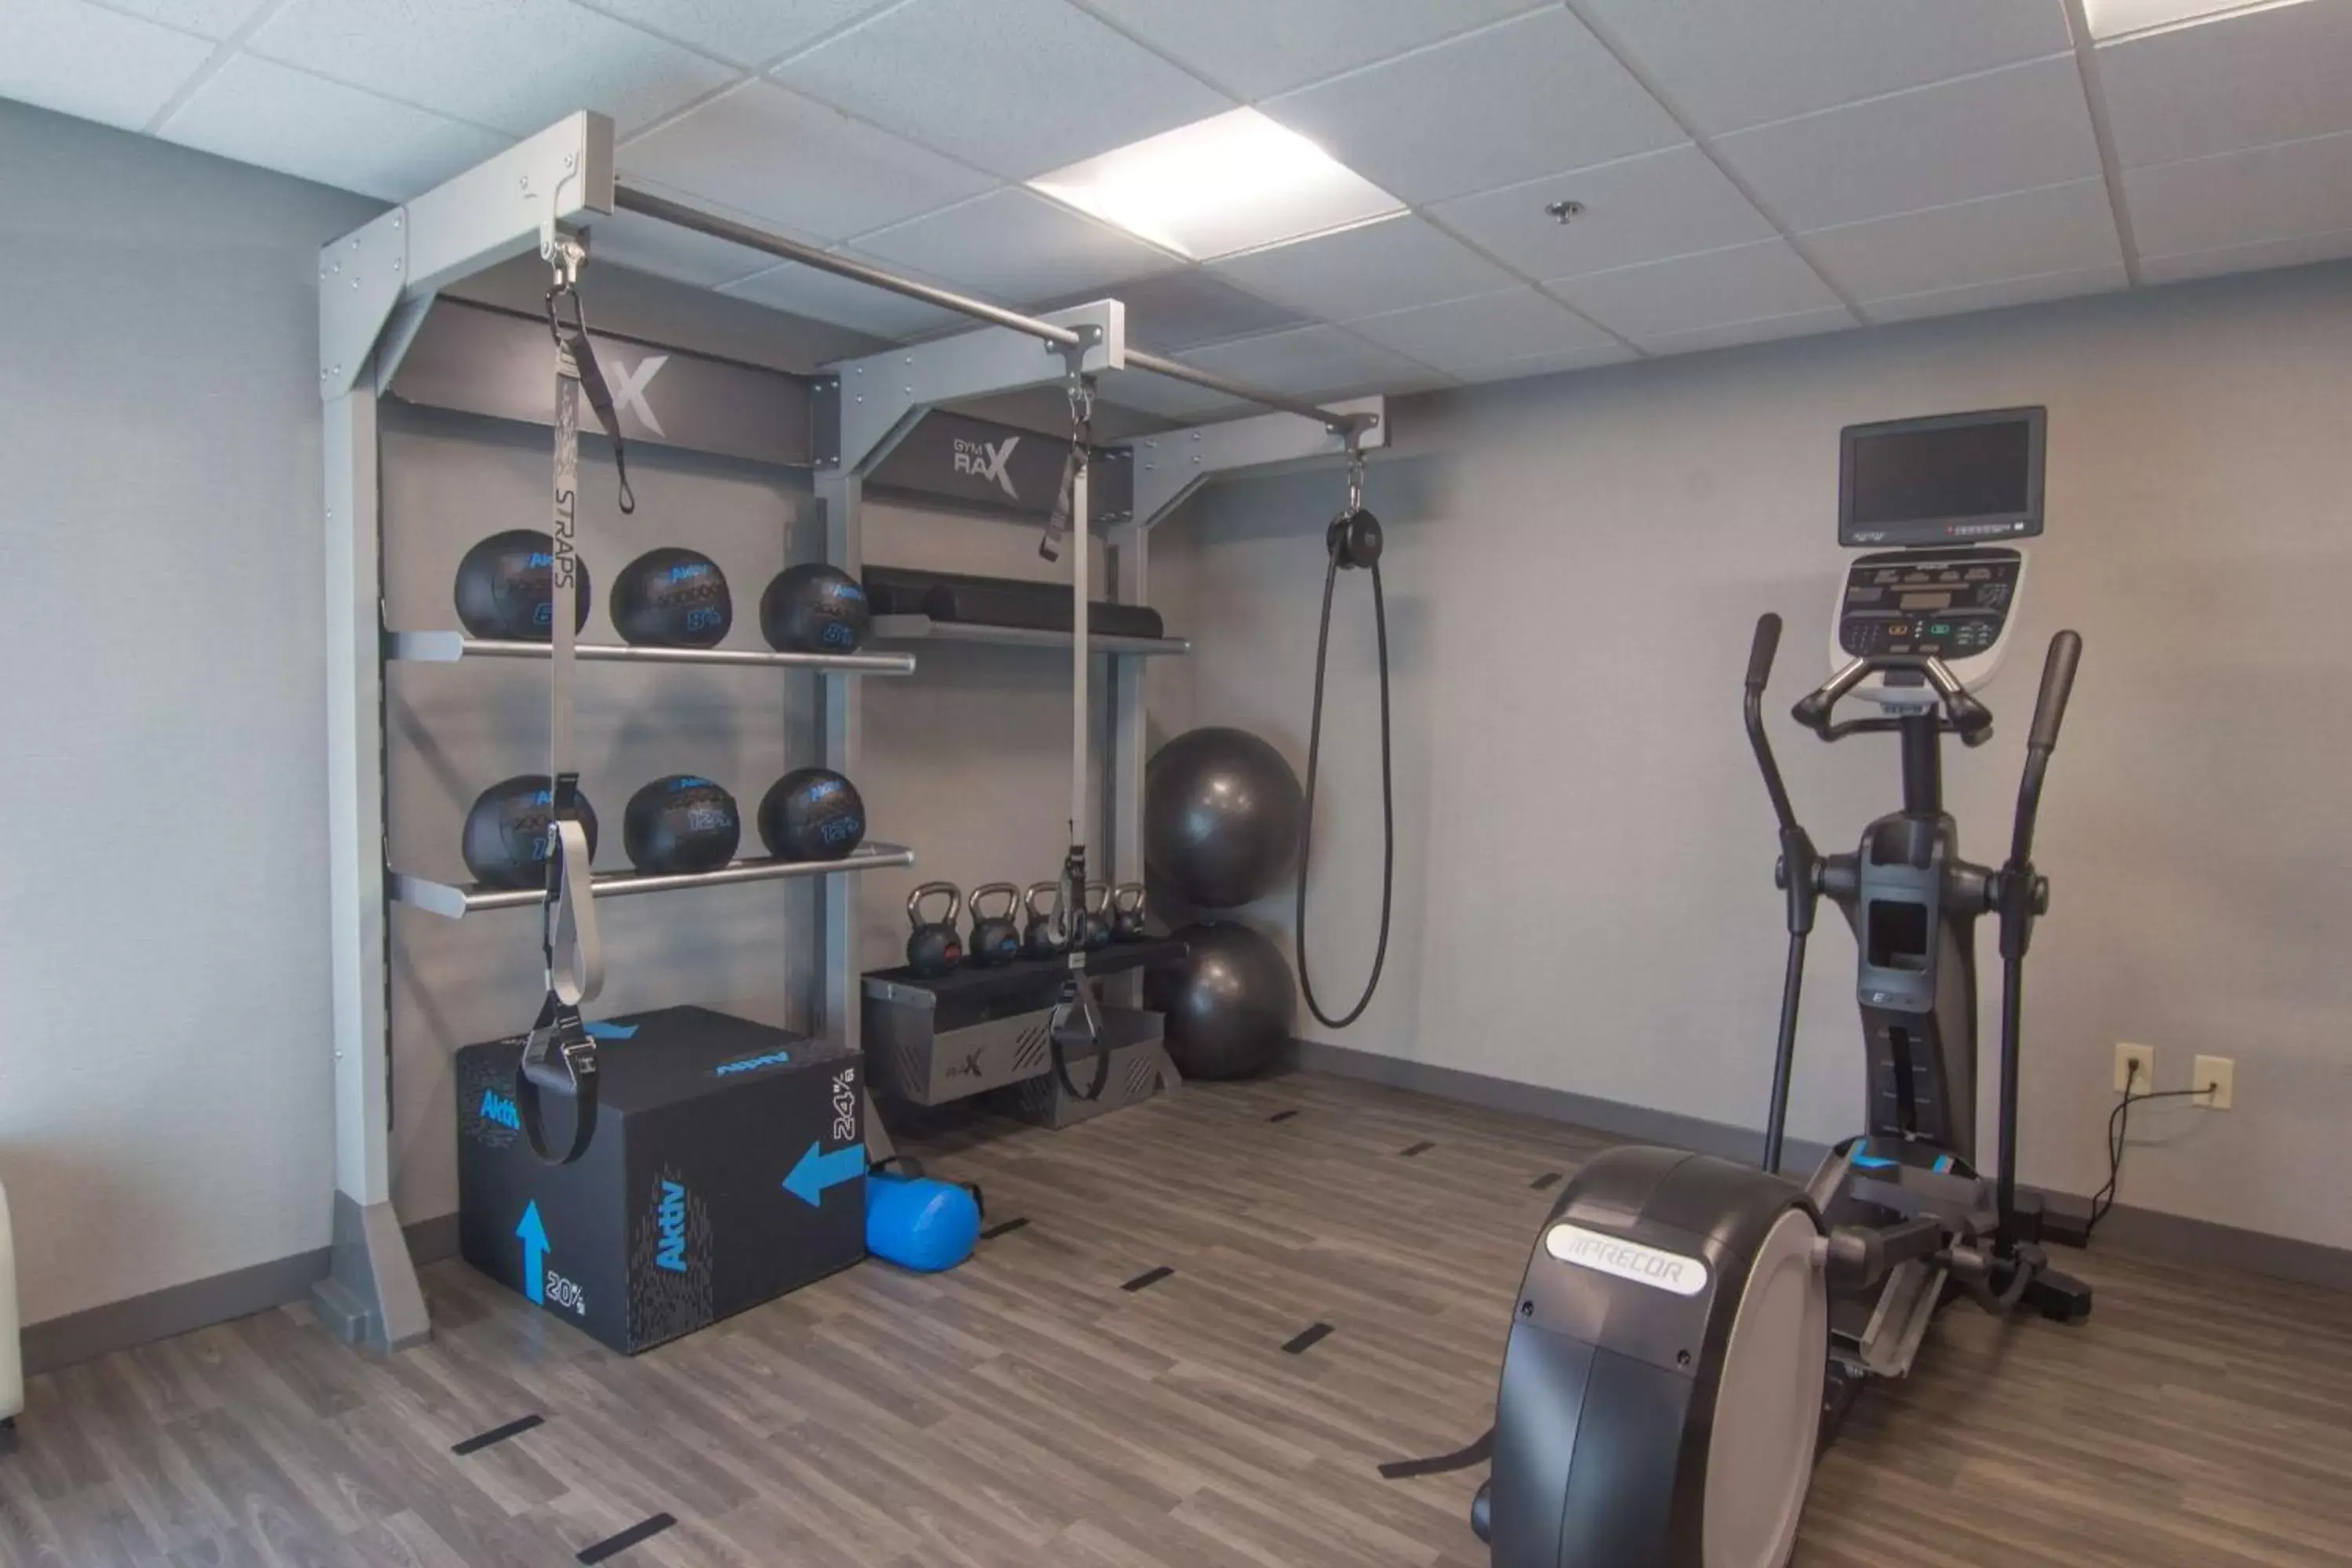 Fitness centre/facilities, Fitness Center/Facilities in Hampton Inn Medina